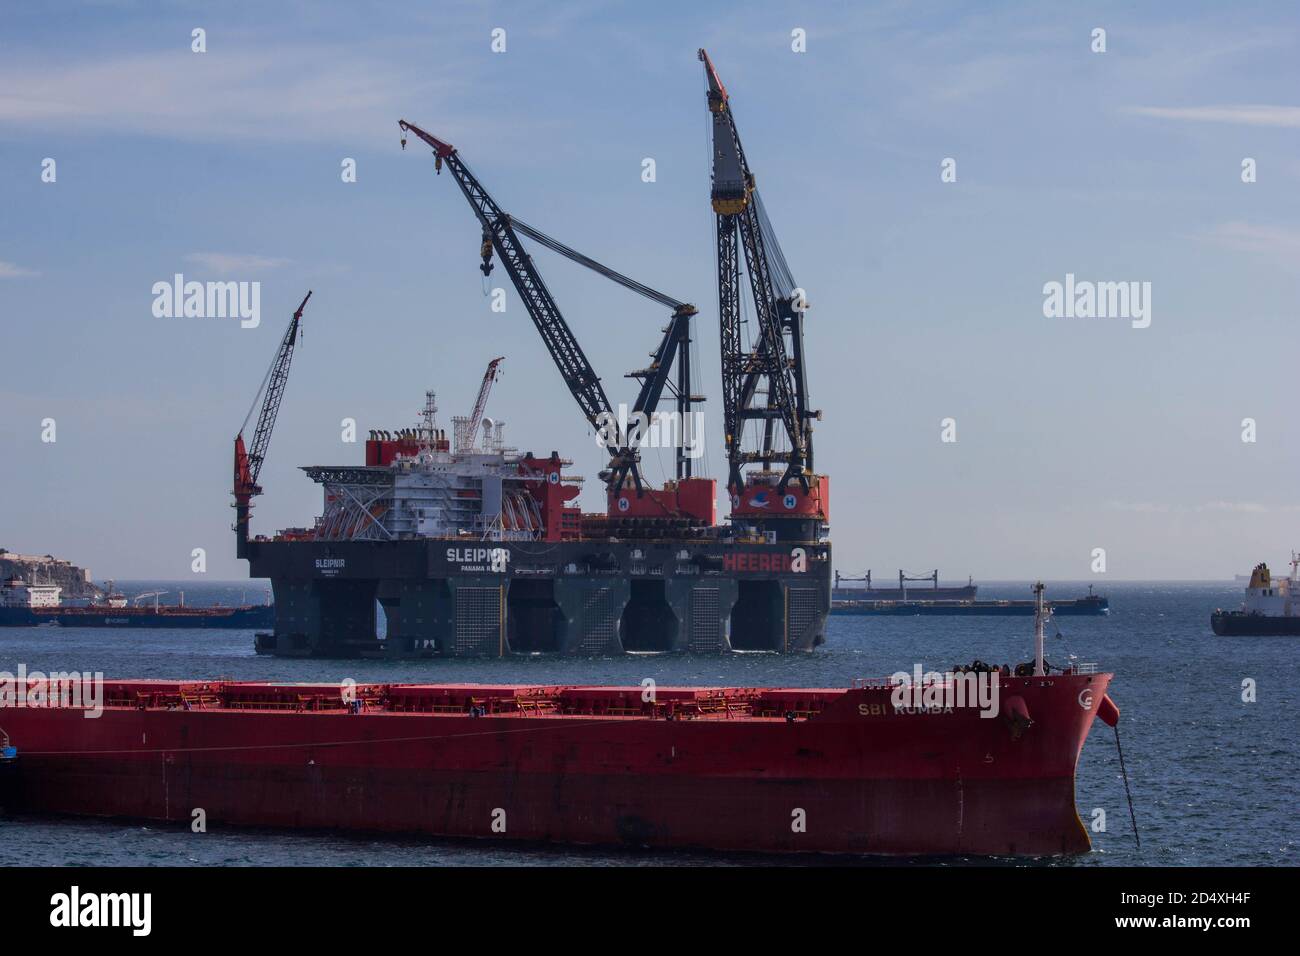 Sleipnir - la plus grande grue de mer au monde, ancrée au large de Gibraltar. Autres vaisseaux au premier plan. Banque D'Images